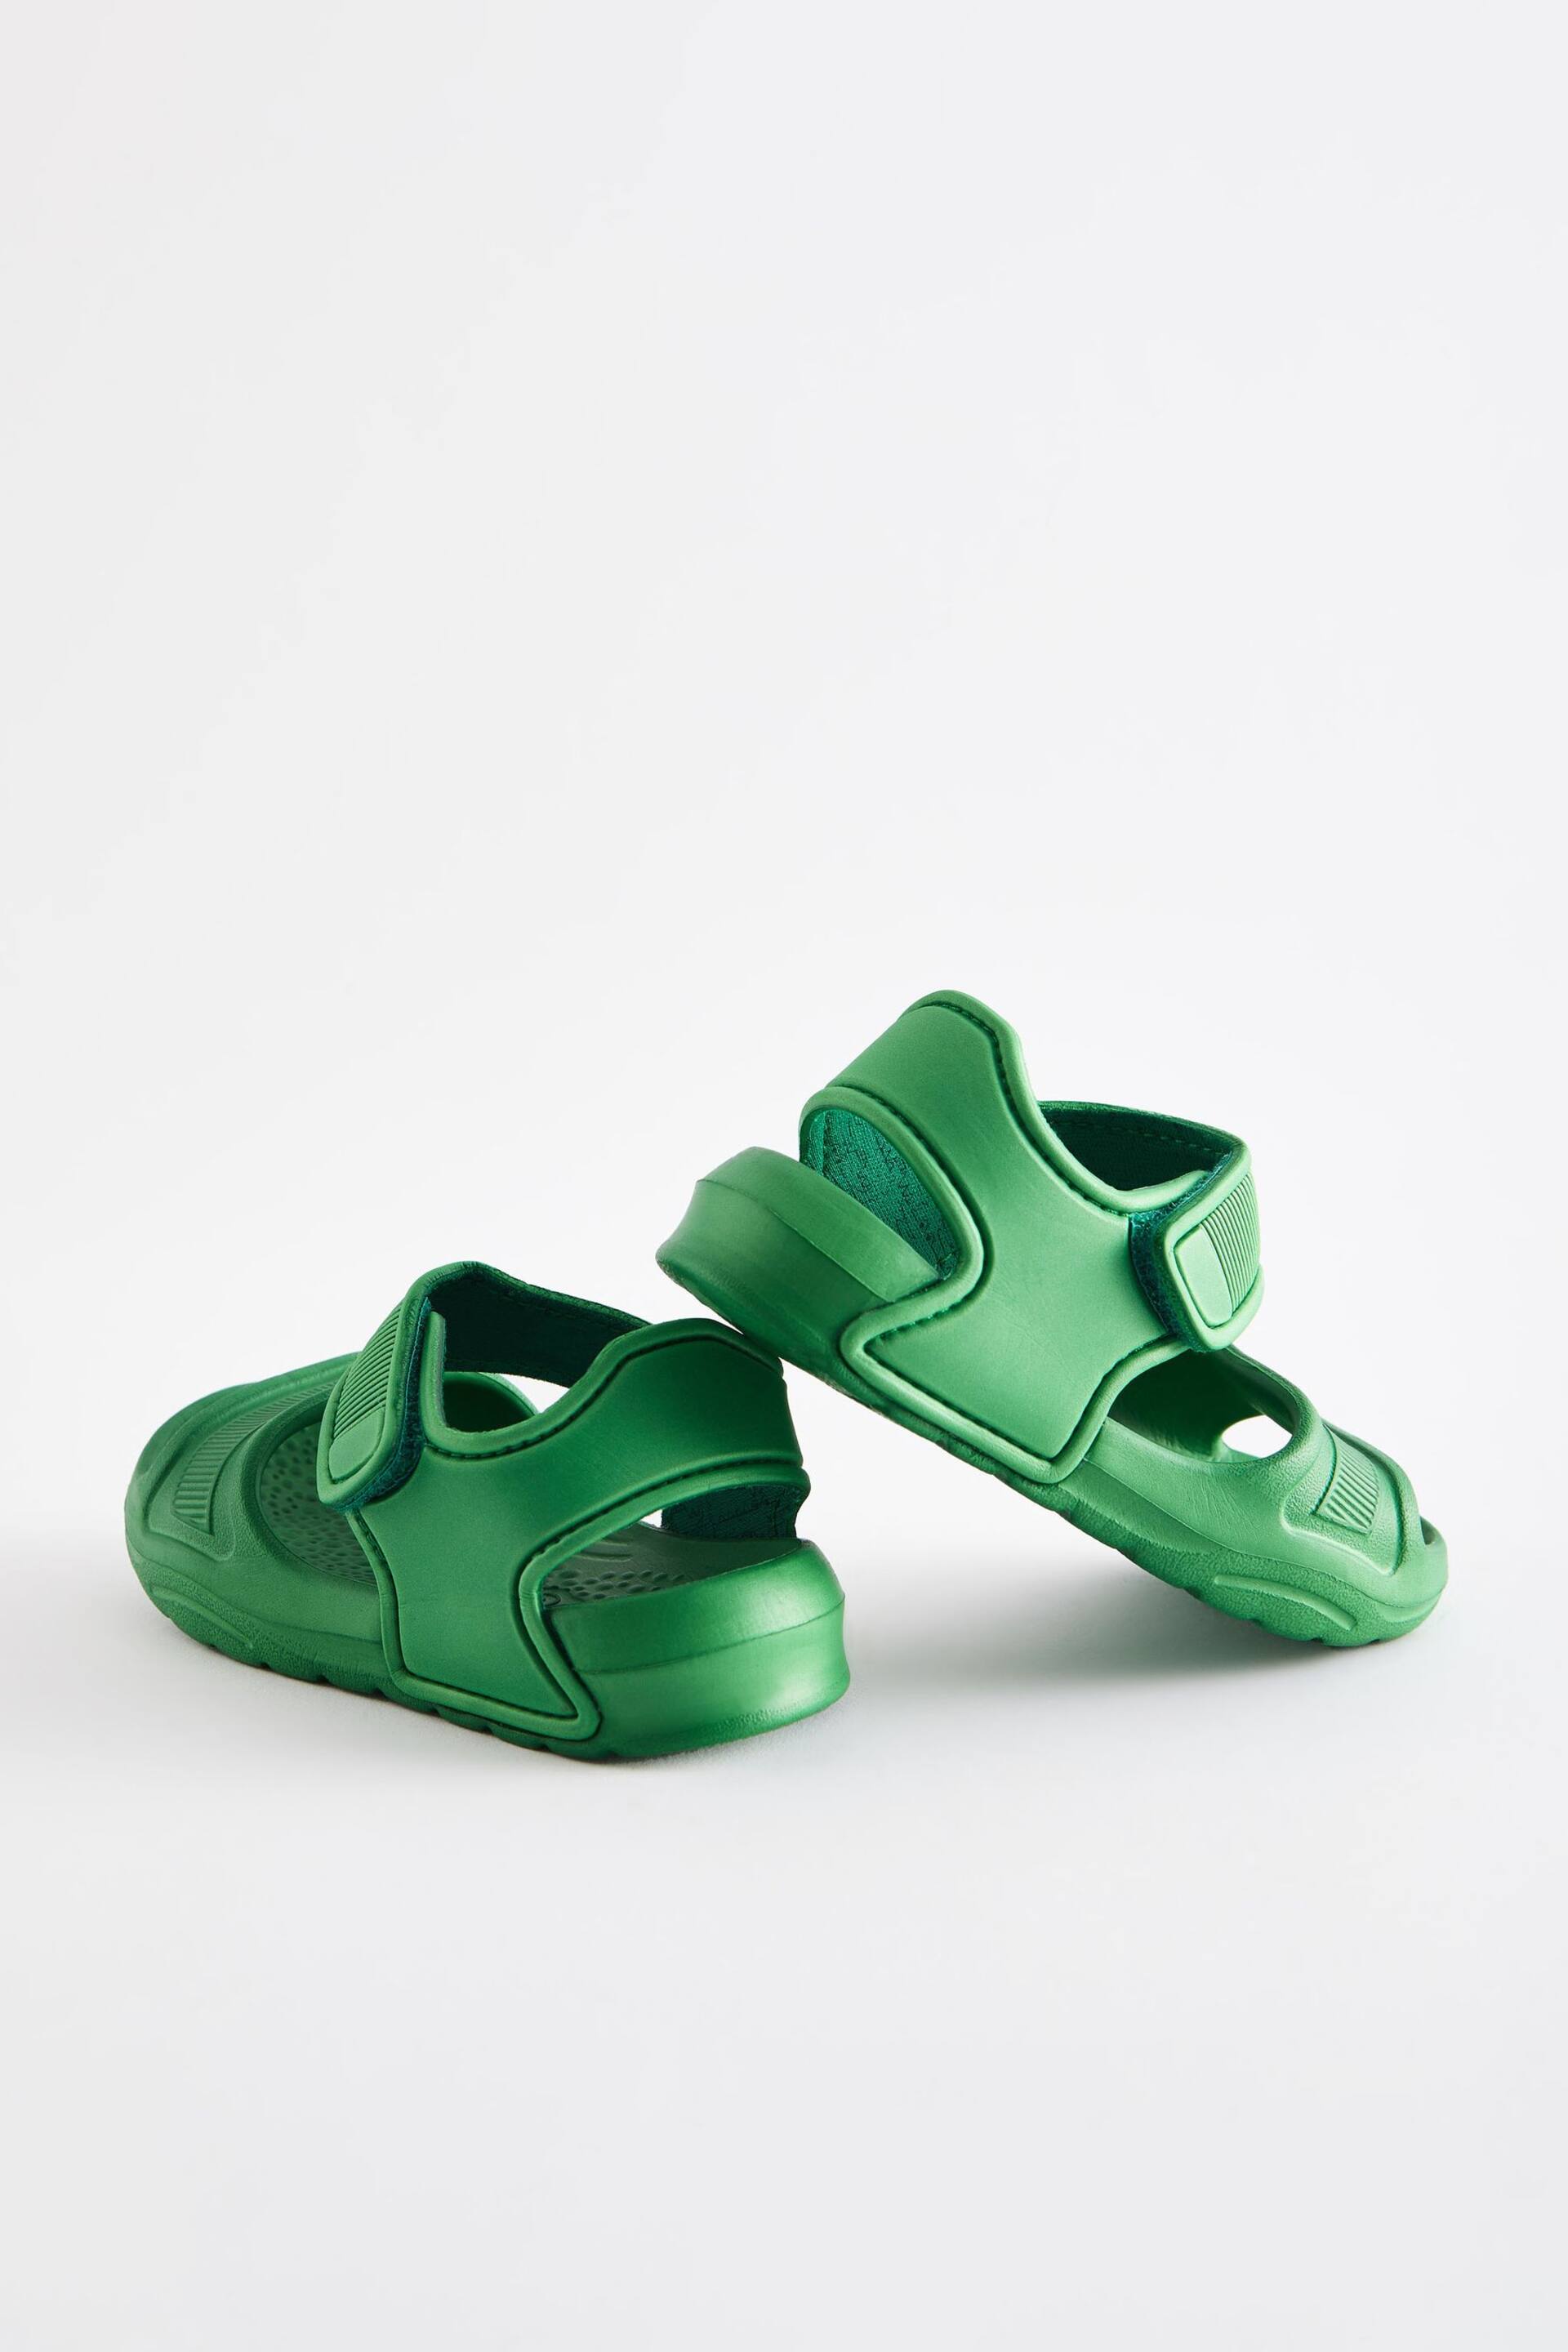 Green Pool Sliders - Image 3 of 5